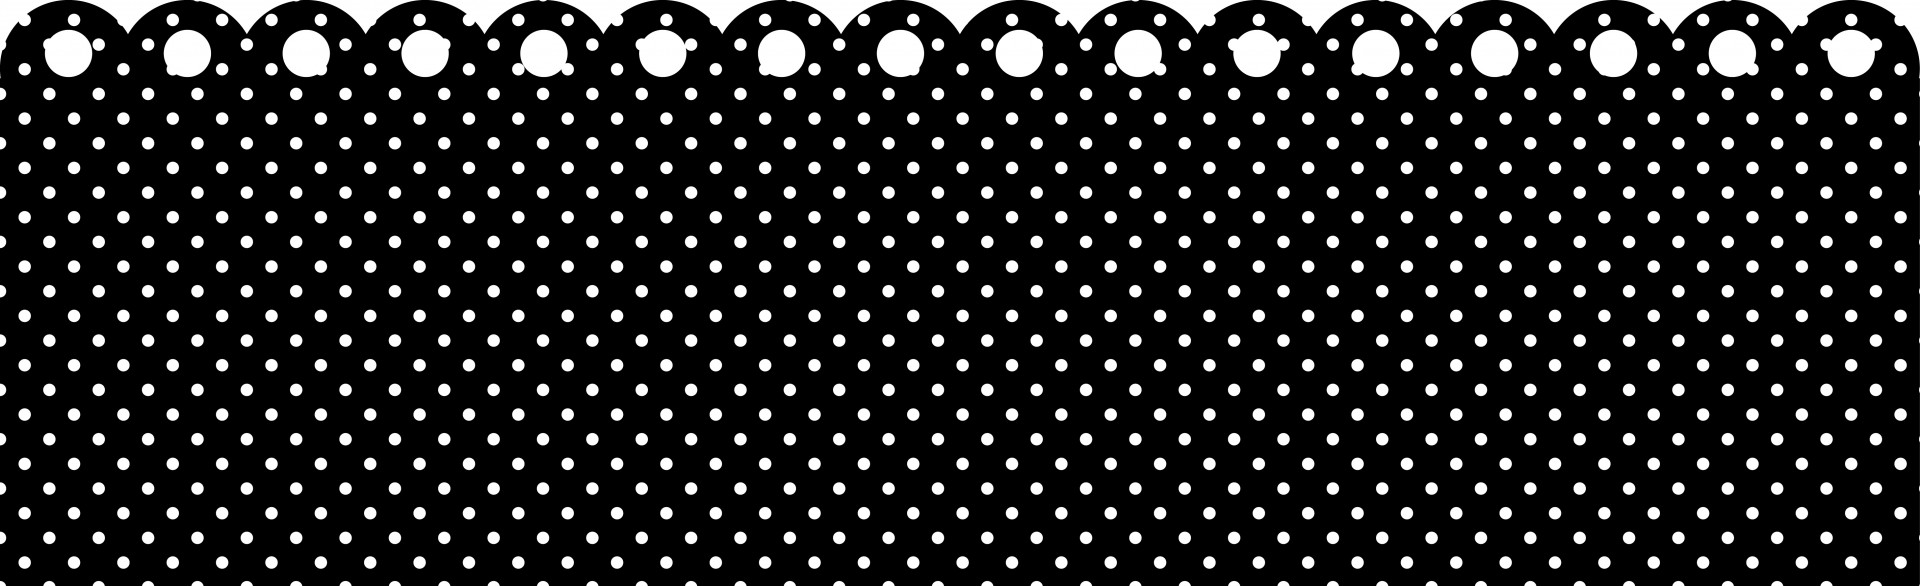 Polka Dots Border Black & White